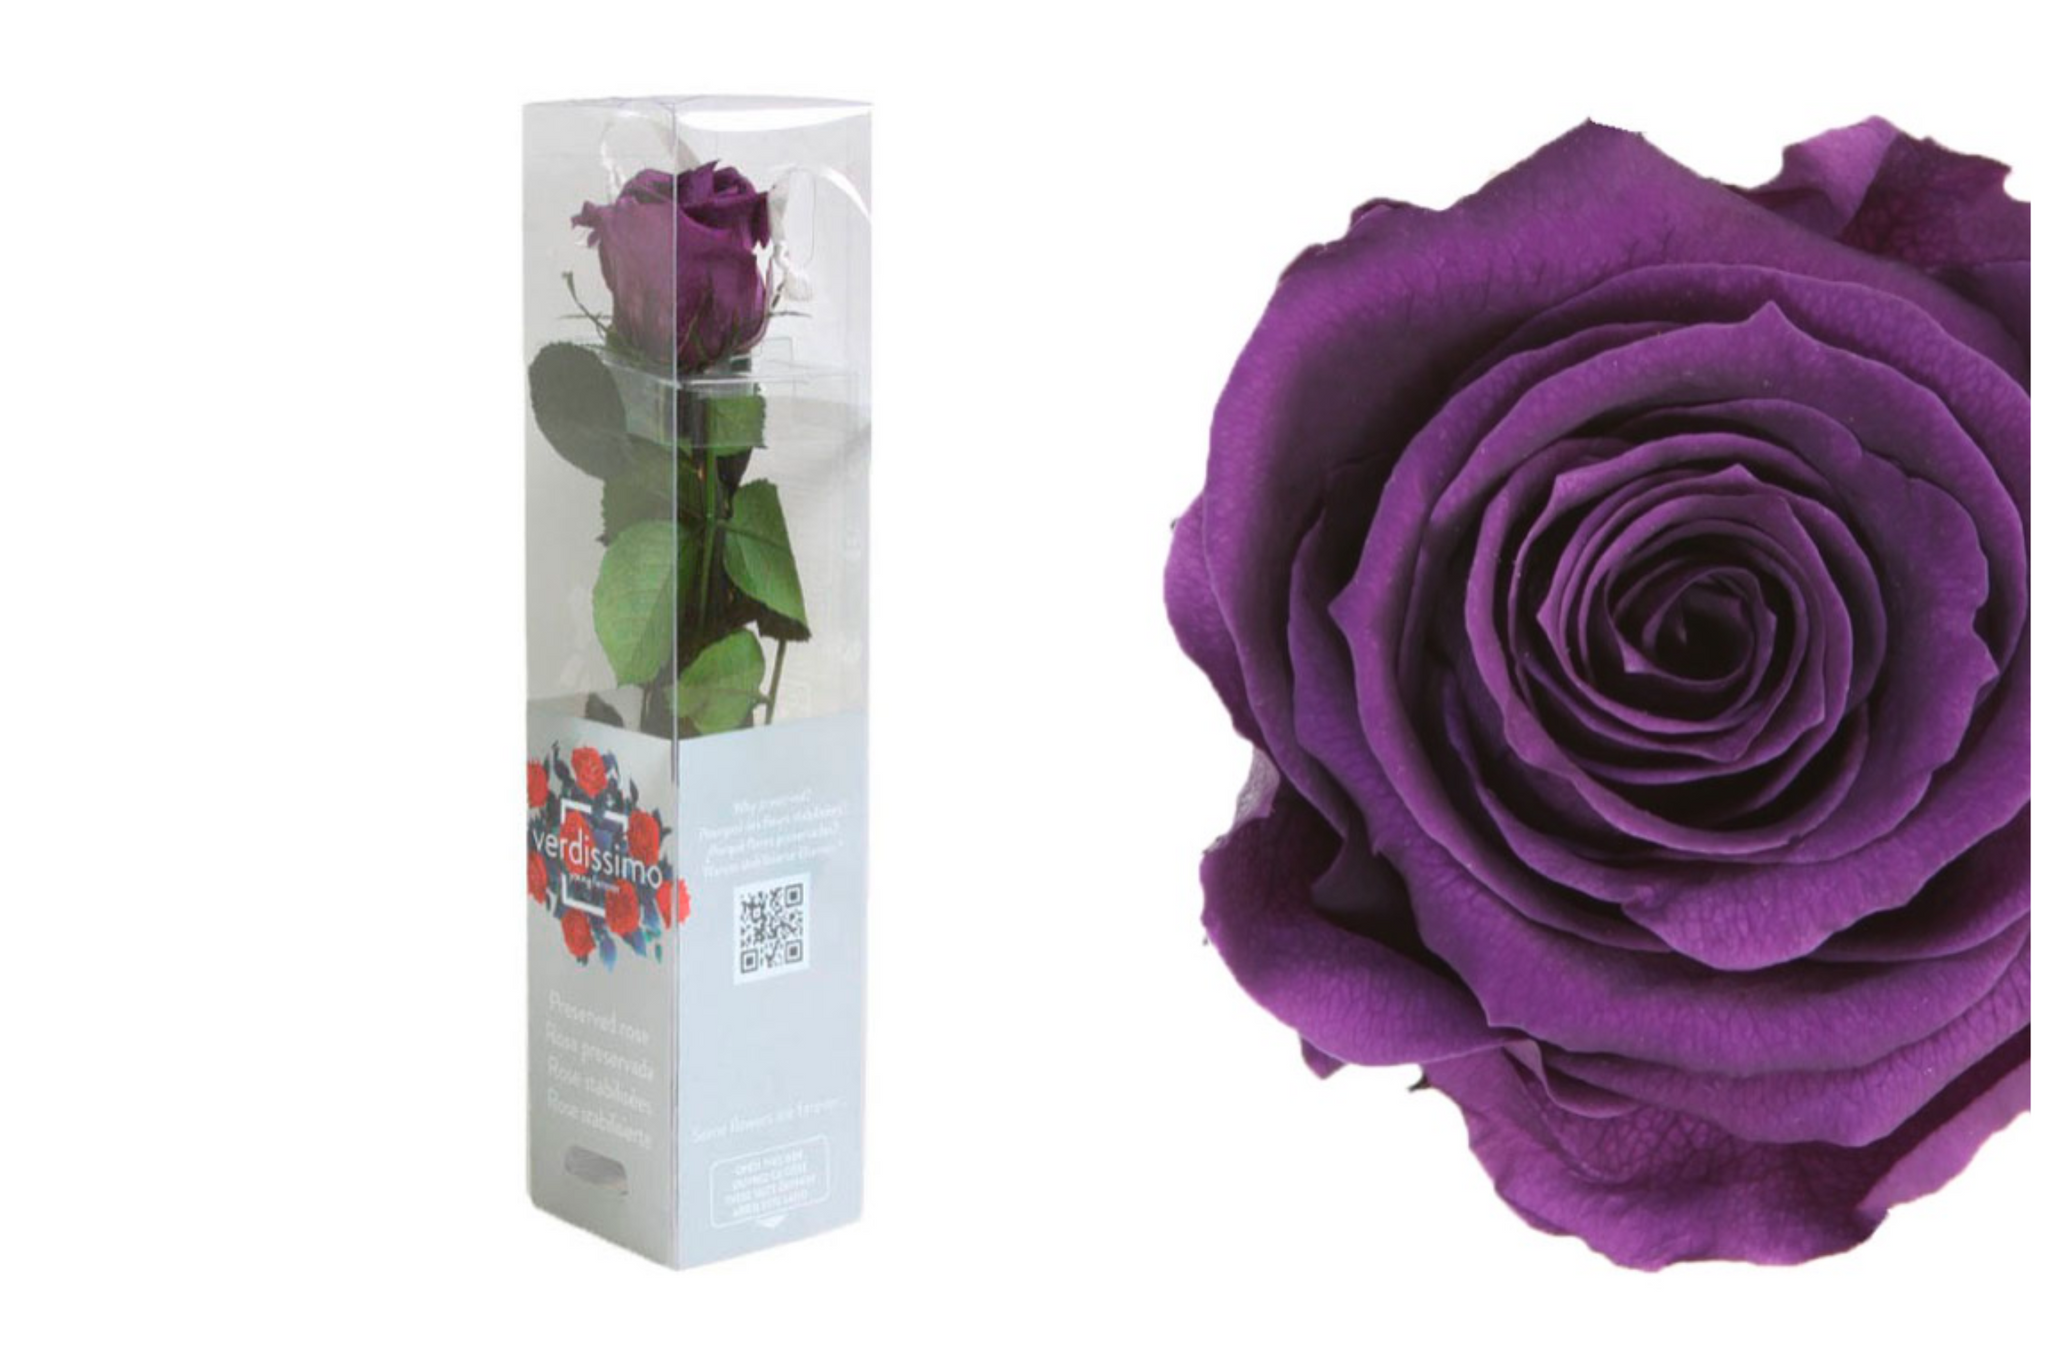 Cuidados y consejos – Etiquetado Rosas eternas– Florería Violeta